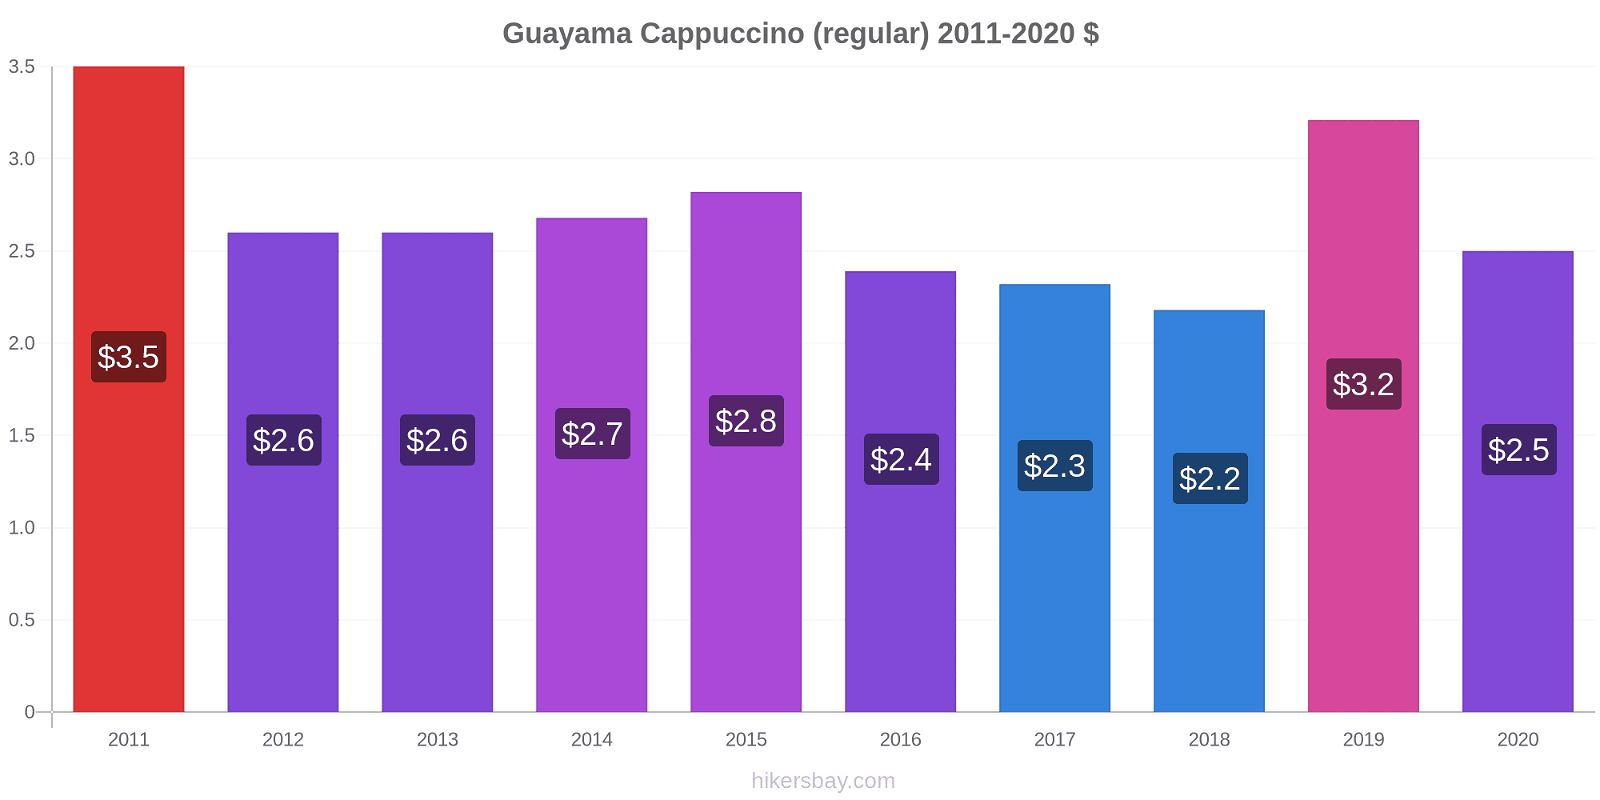 Guayama variação de preço Capuccino (regular) hikersbay.com